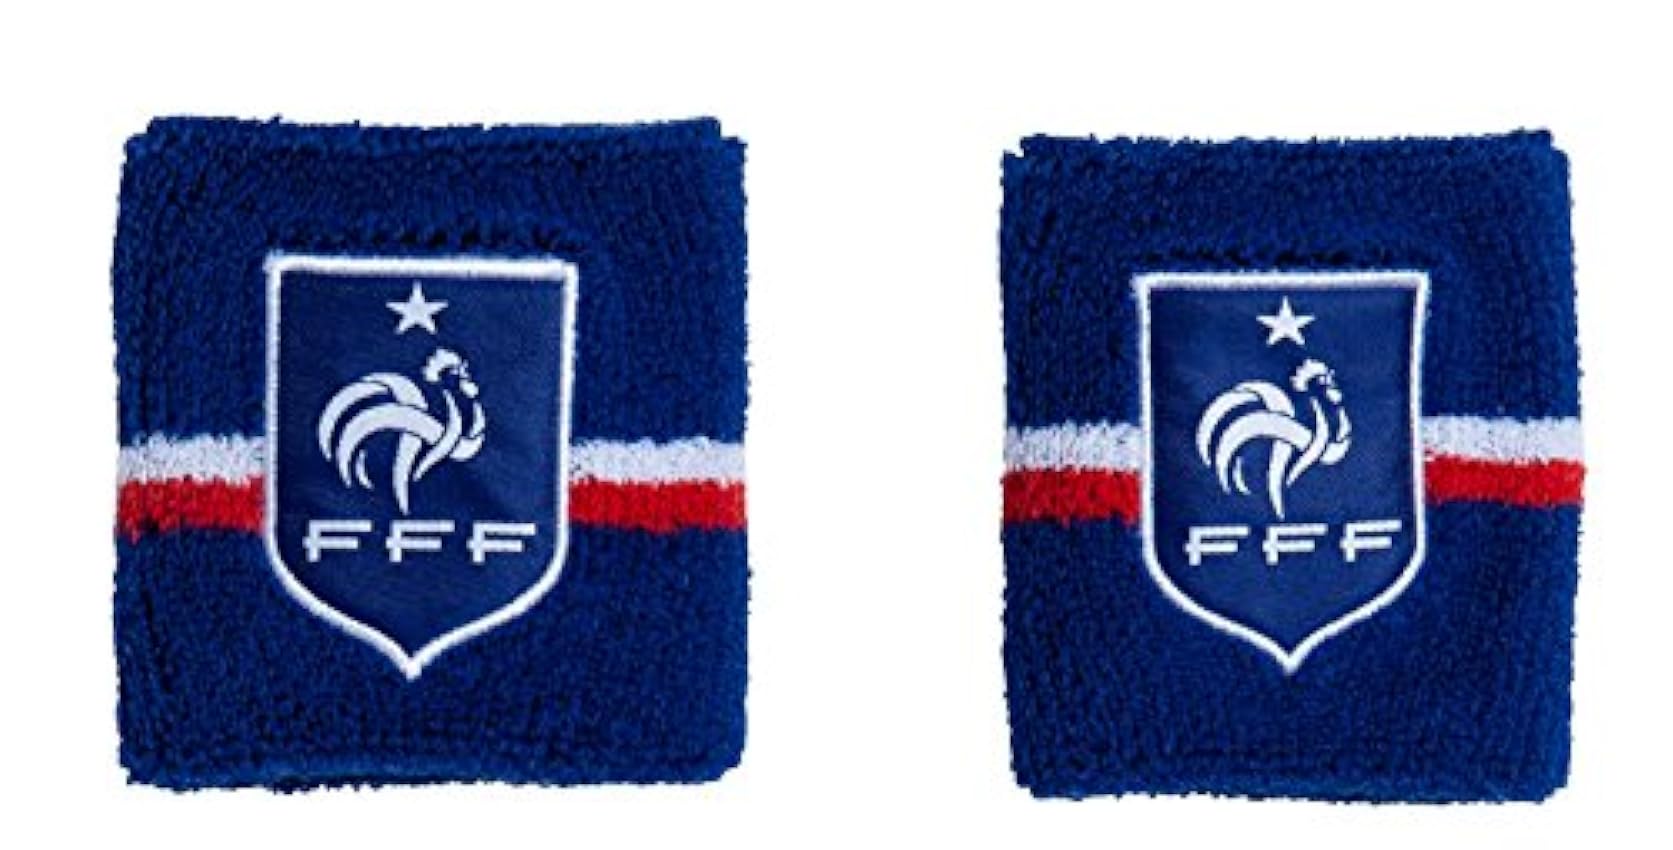 Equipe de France de Football 2 x Poignet éponge FFF - Collection Officielle Taille Homme NW7sZW4X